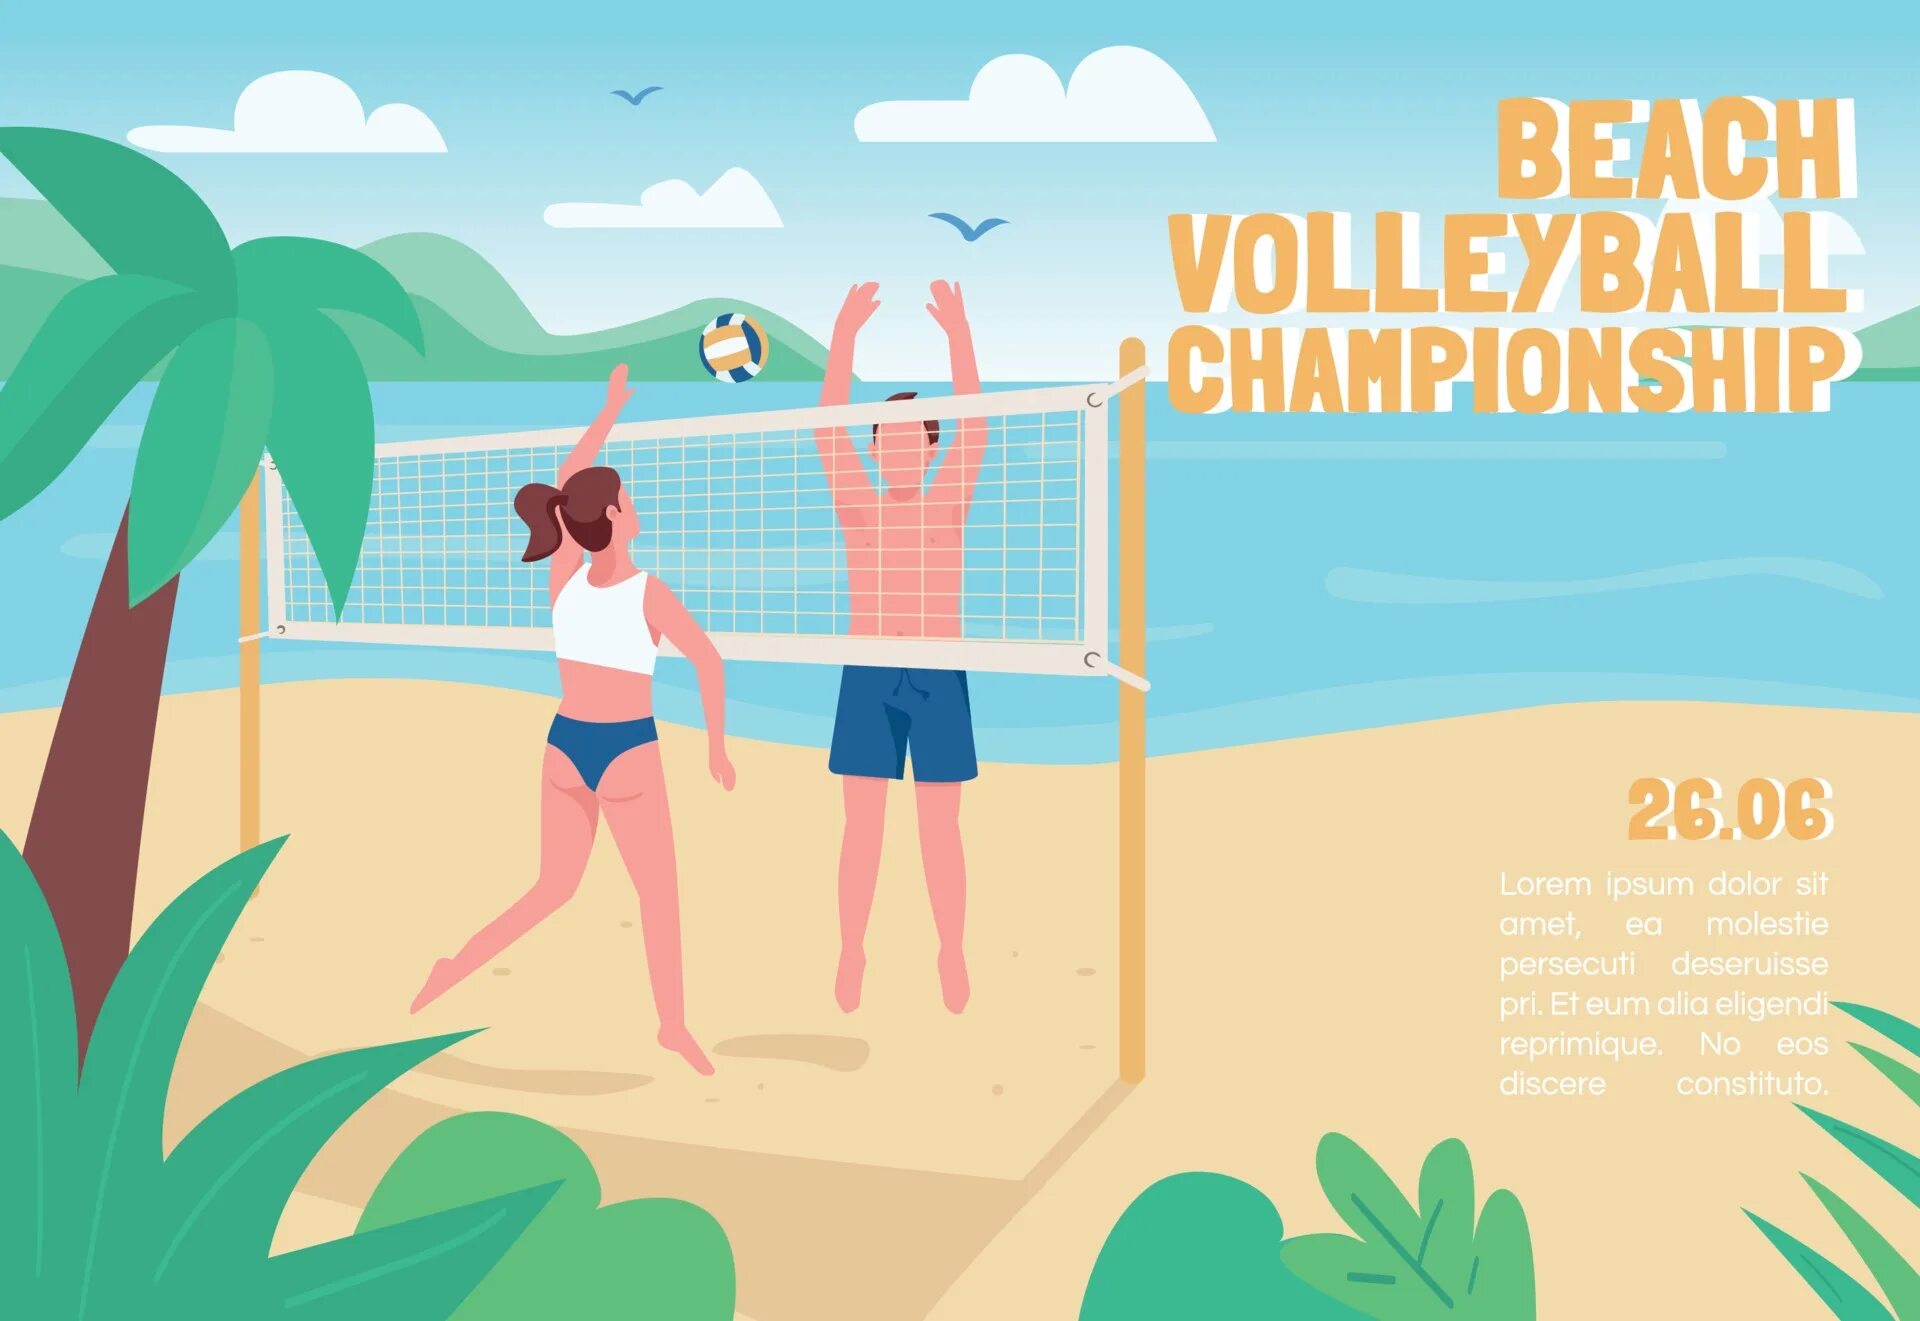 Буклет волейбол. Баннер пляжный волейбол. Пляжный волейбол плакат. Пляжный волейбол рисунок. Волейбольные плакаты.